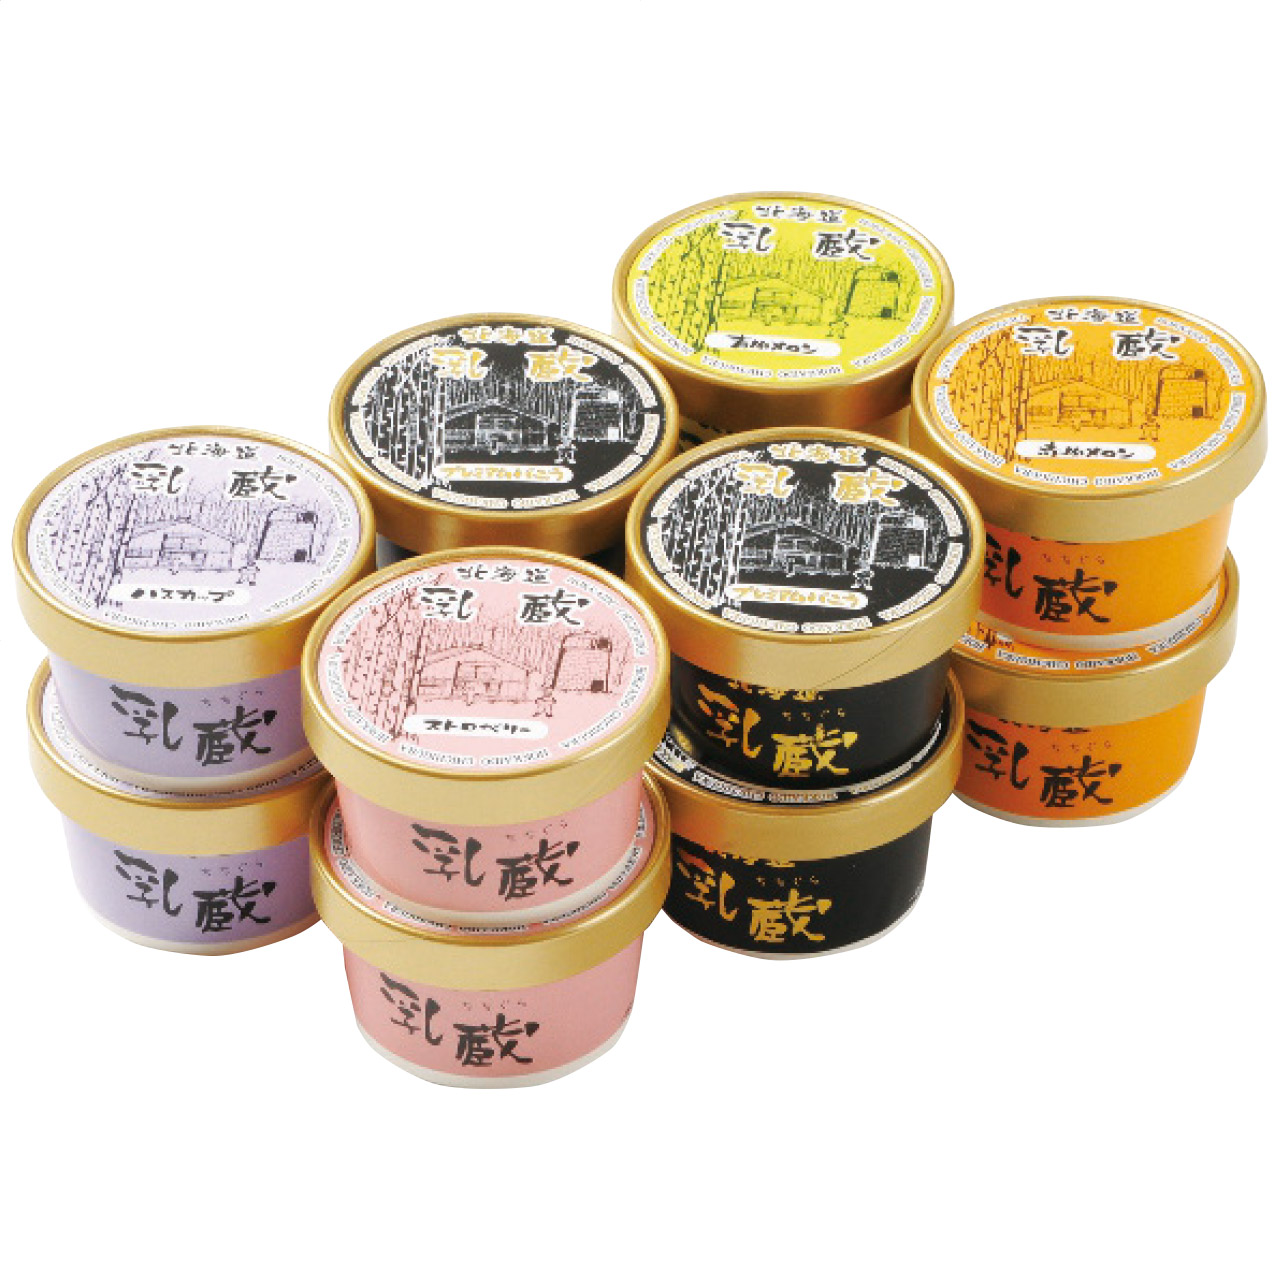 北海道アイスクリーム5種12個